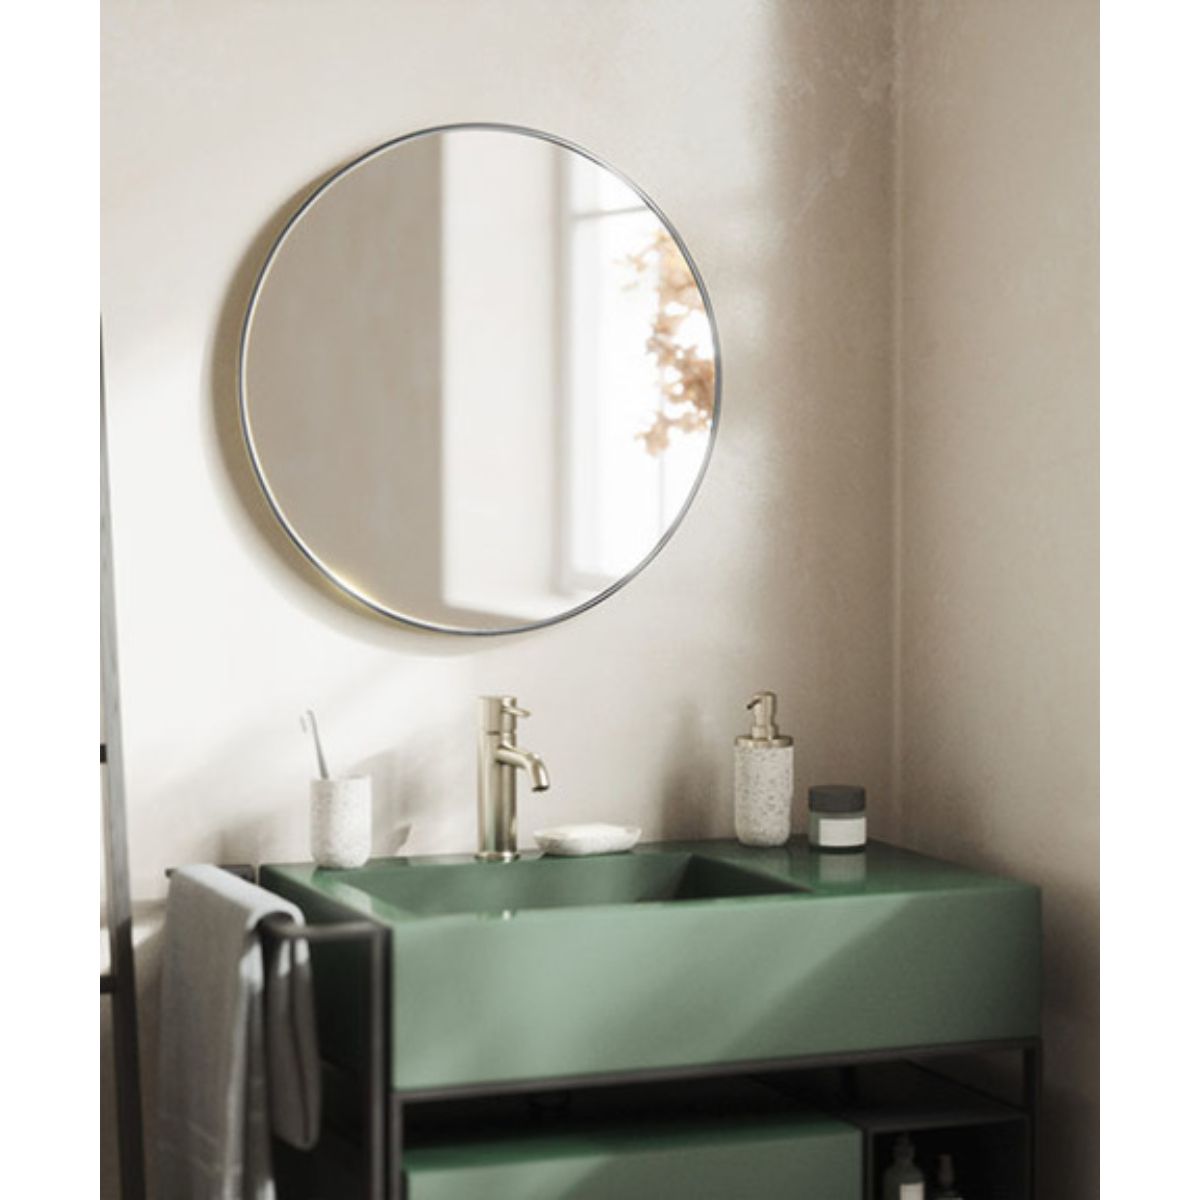 クリスタル ミラー 洗面鏡 浴室鏡 350x1000mm 長方形 デラックスカット 洗面 鏡 浴室 壁掛け ミラー 日本製 5mm厚 取付金具と説明書 壁掛け鏡 ウオールミラー - 3